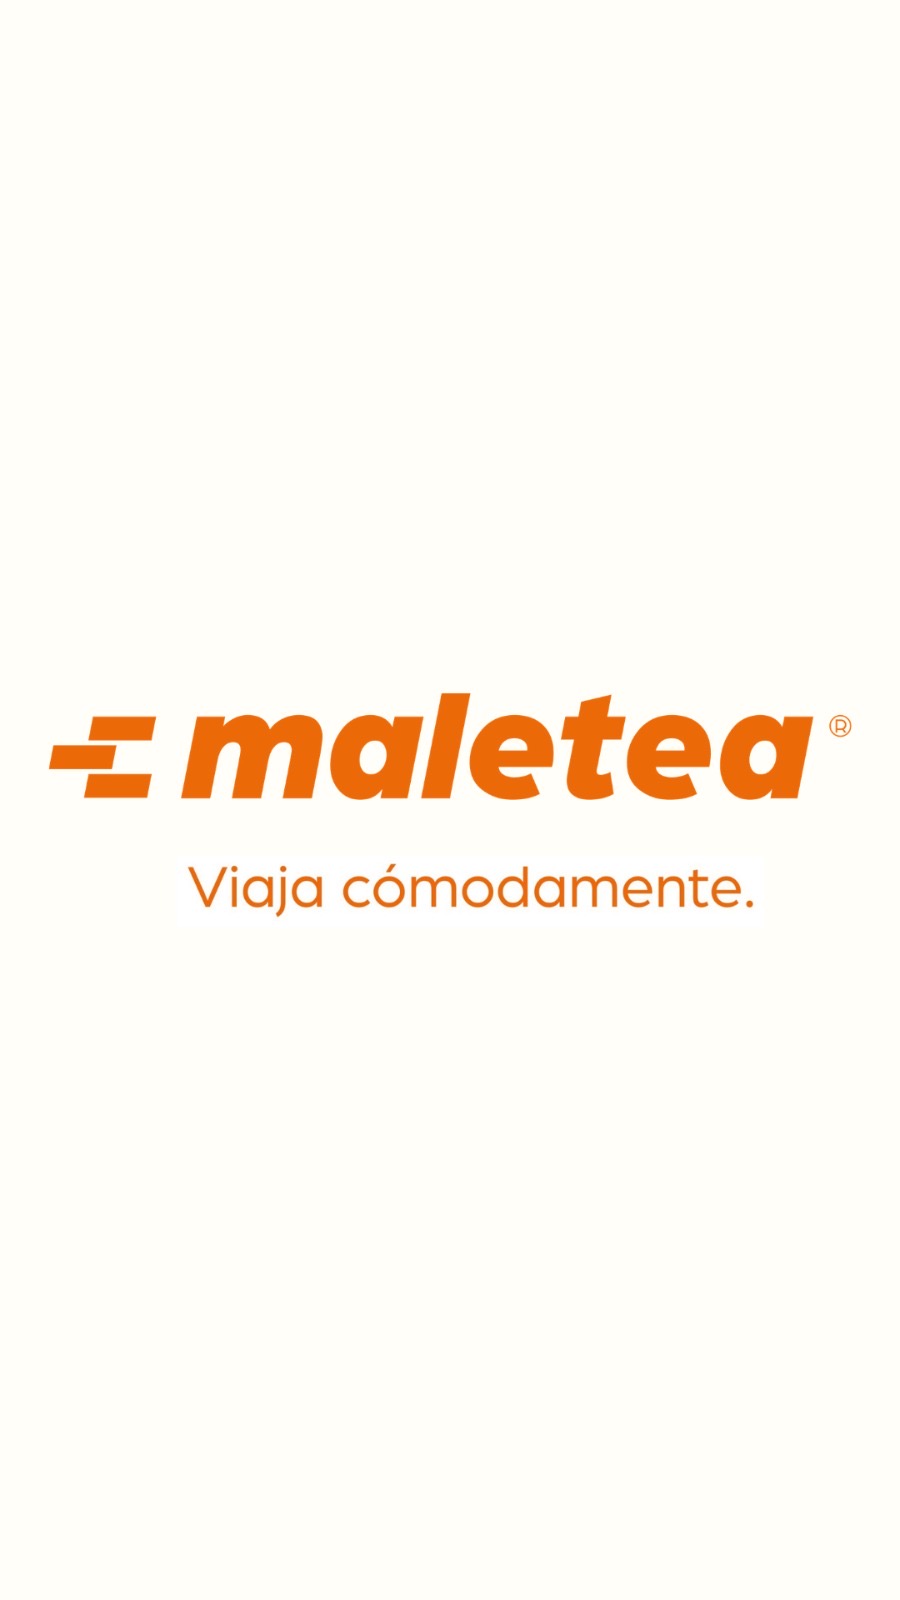 Maletea